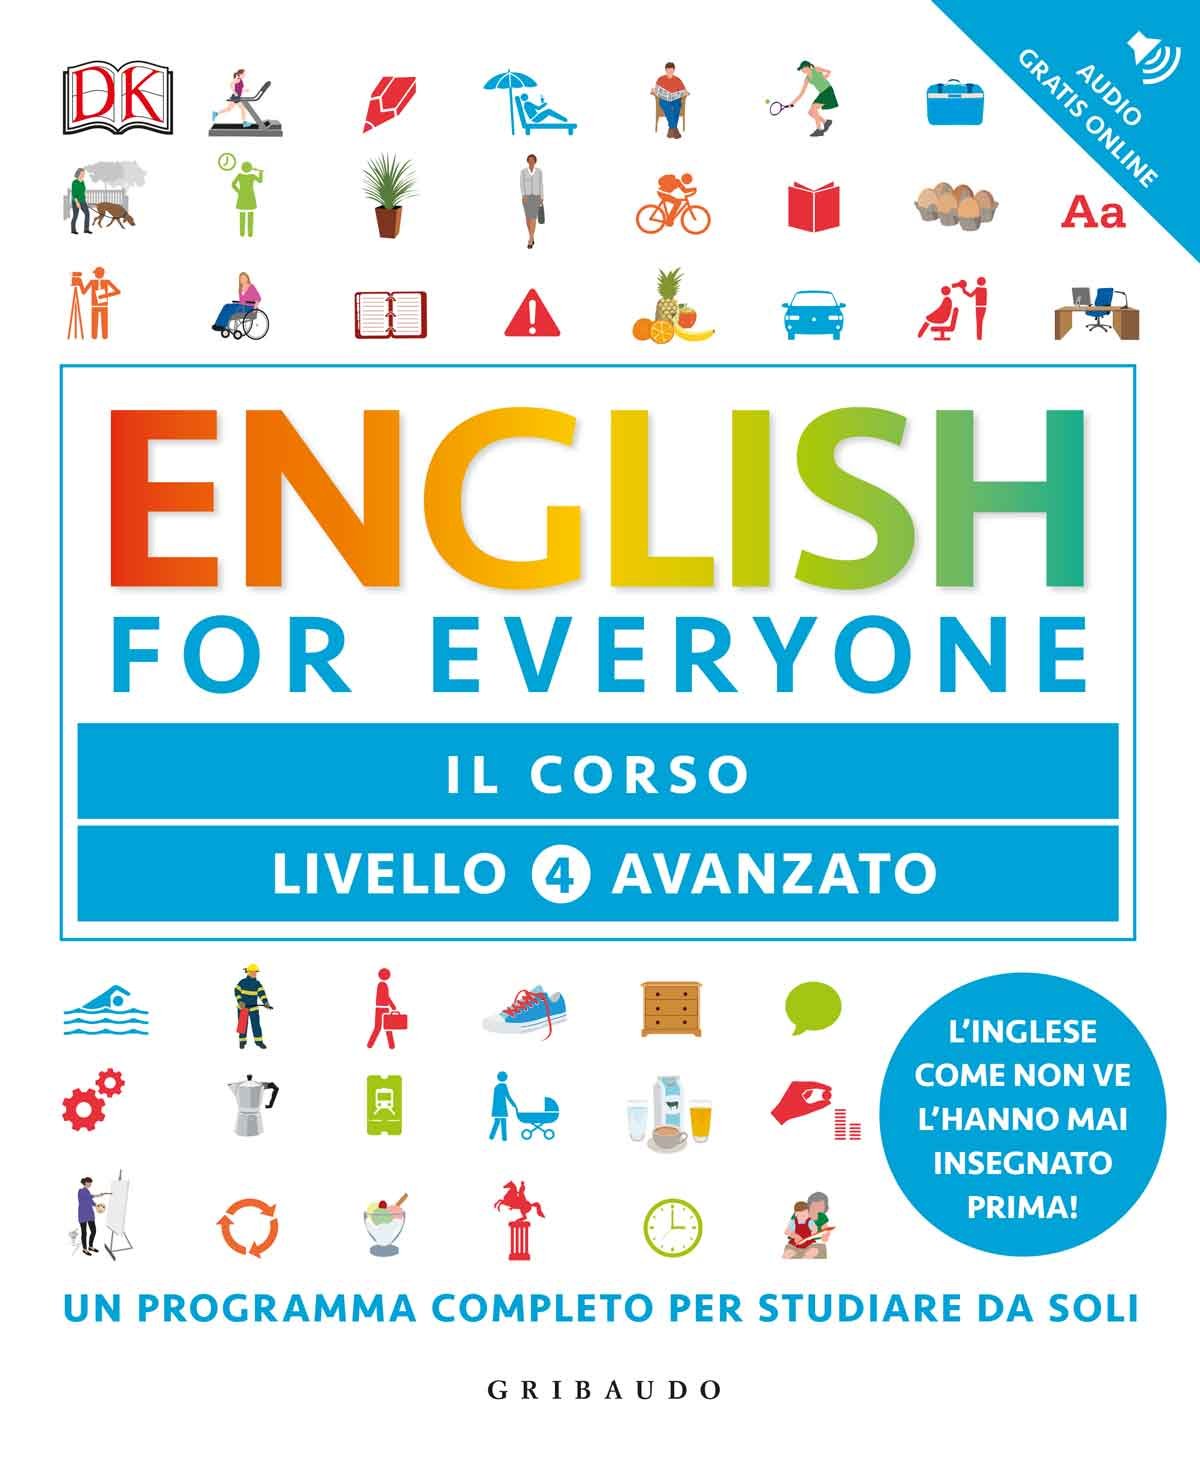 English for everyone - Livello 4 avanzato - Il corso